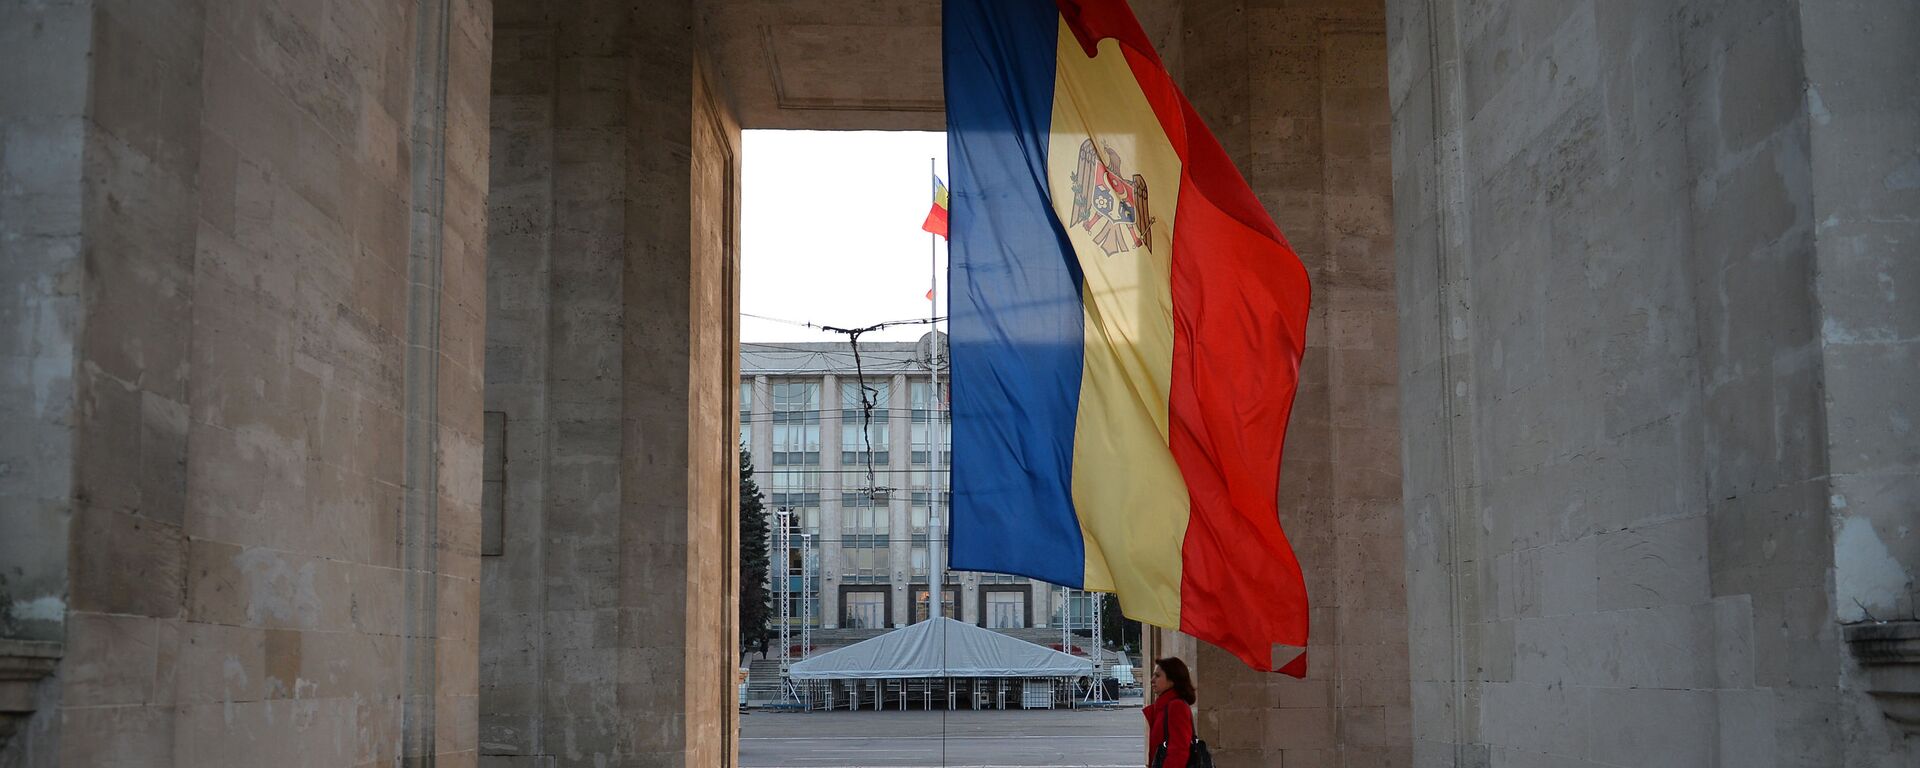 Молдавска застава испод Тријумфалне капије у Кишињеву - Sputnik Србија, 1920, 30.11.2020